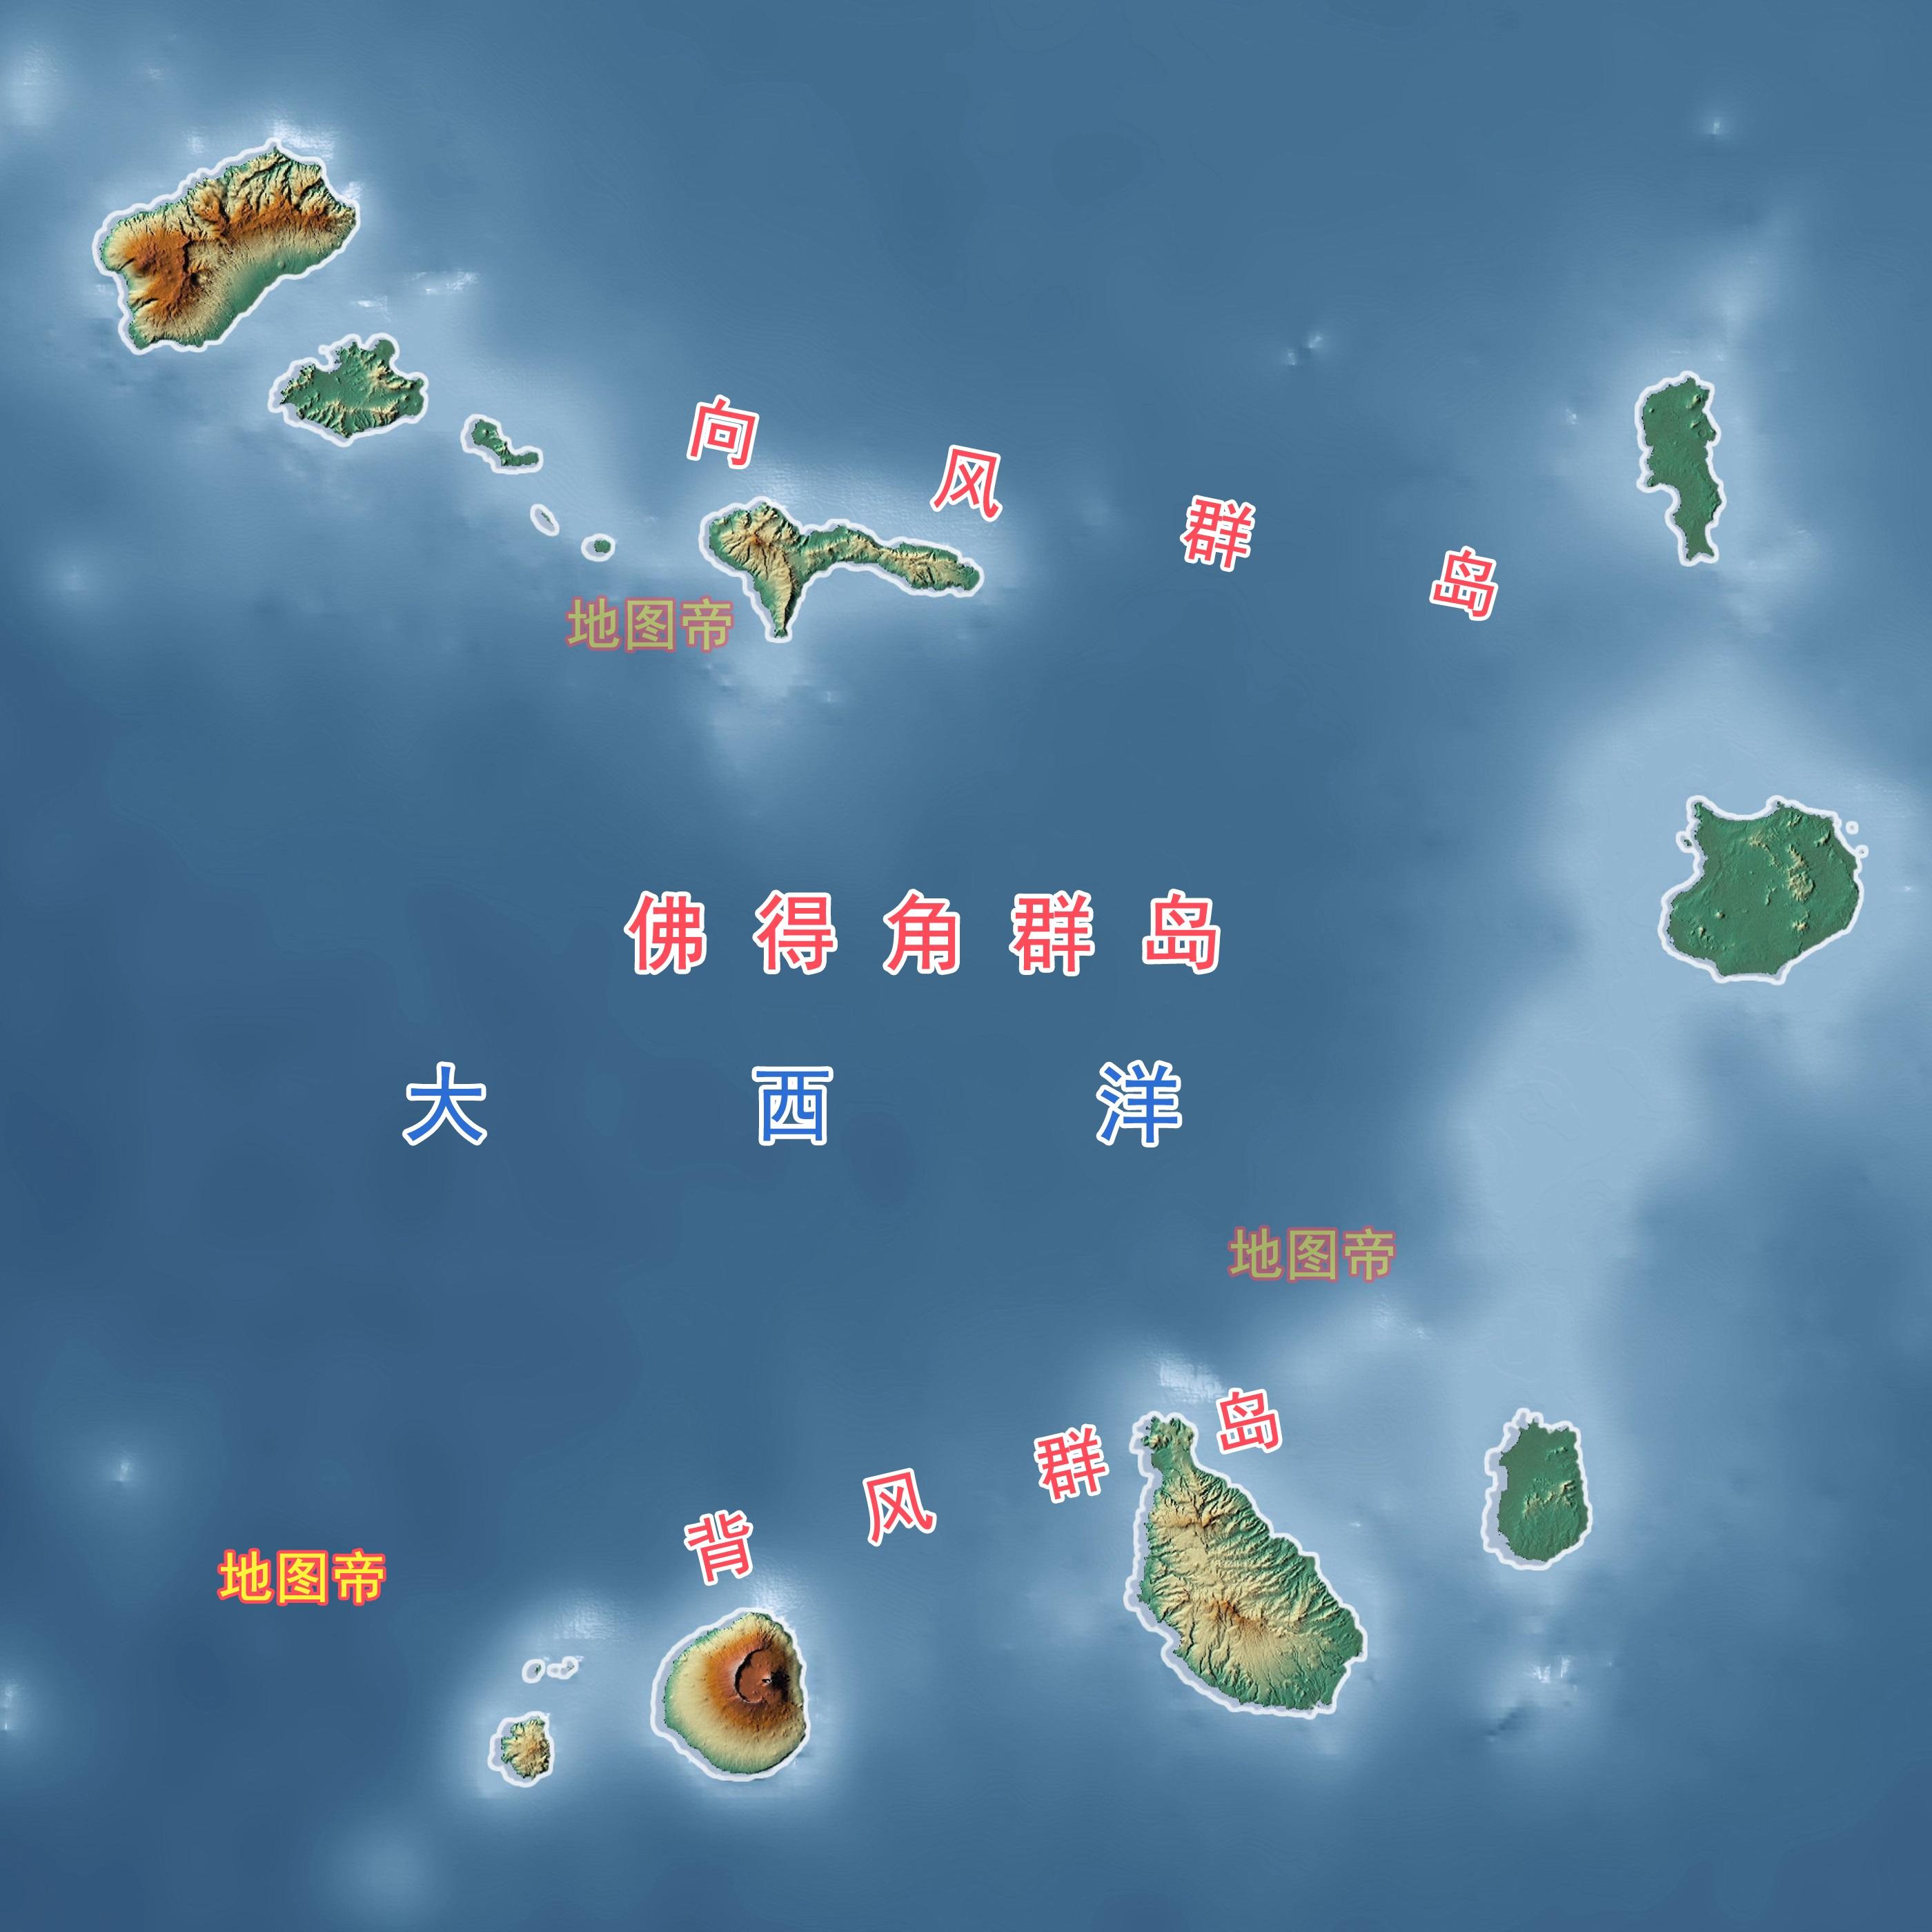 万尼科罗群岛地理位置图片